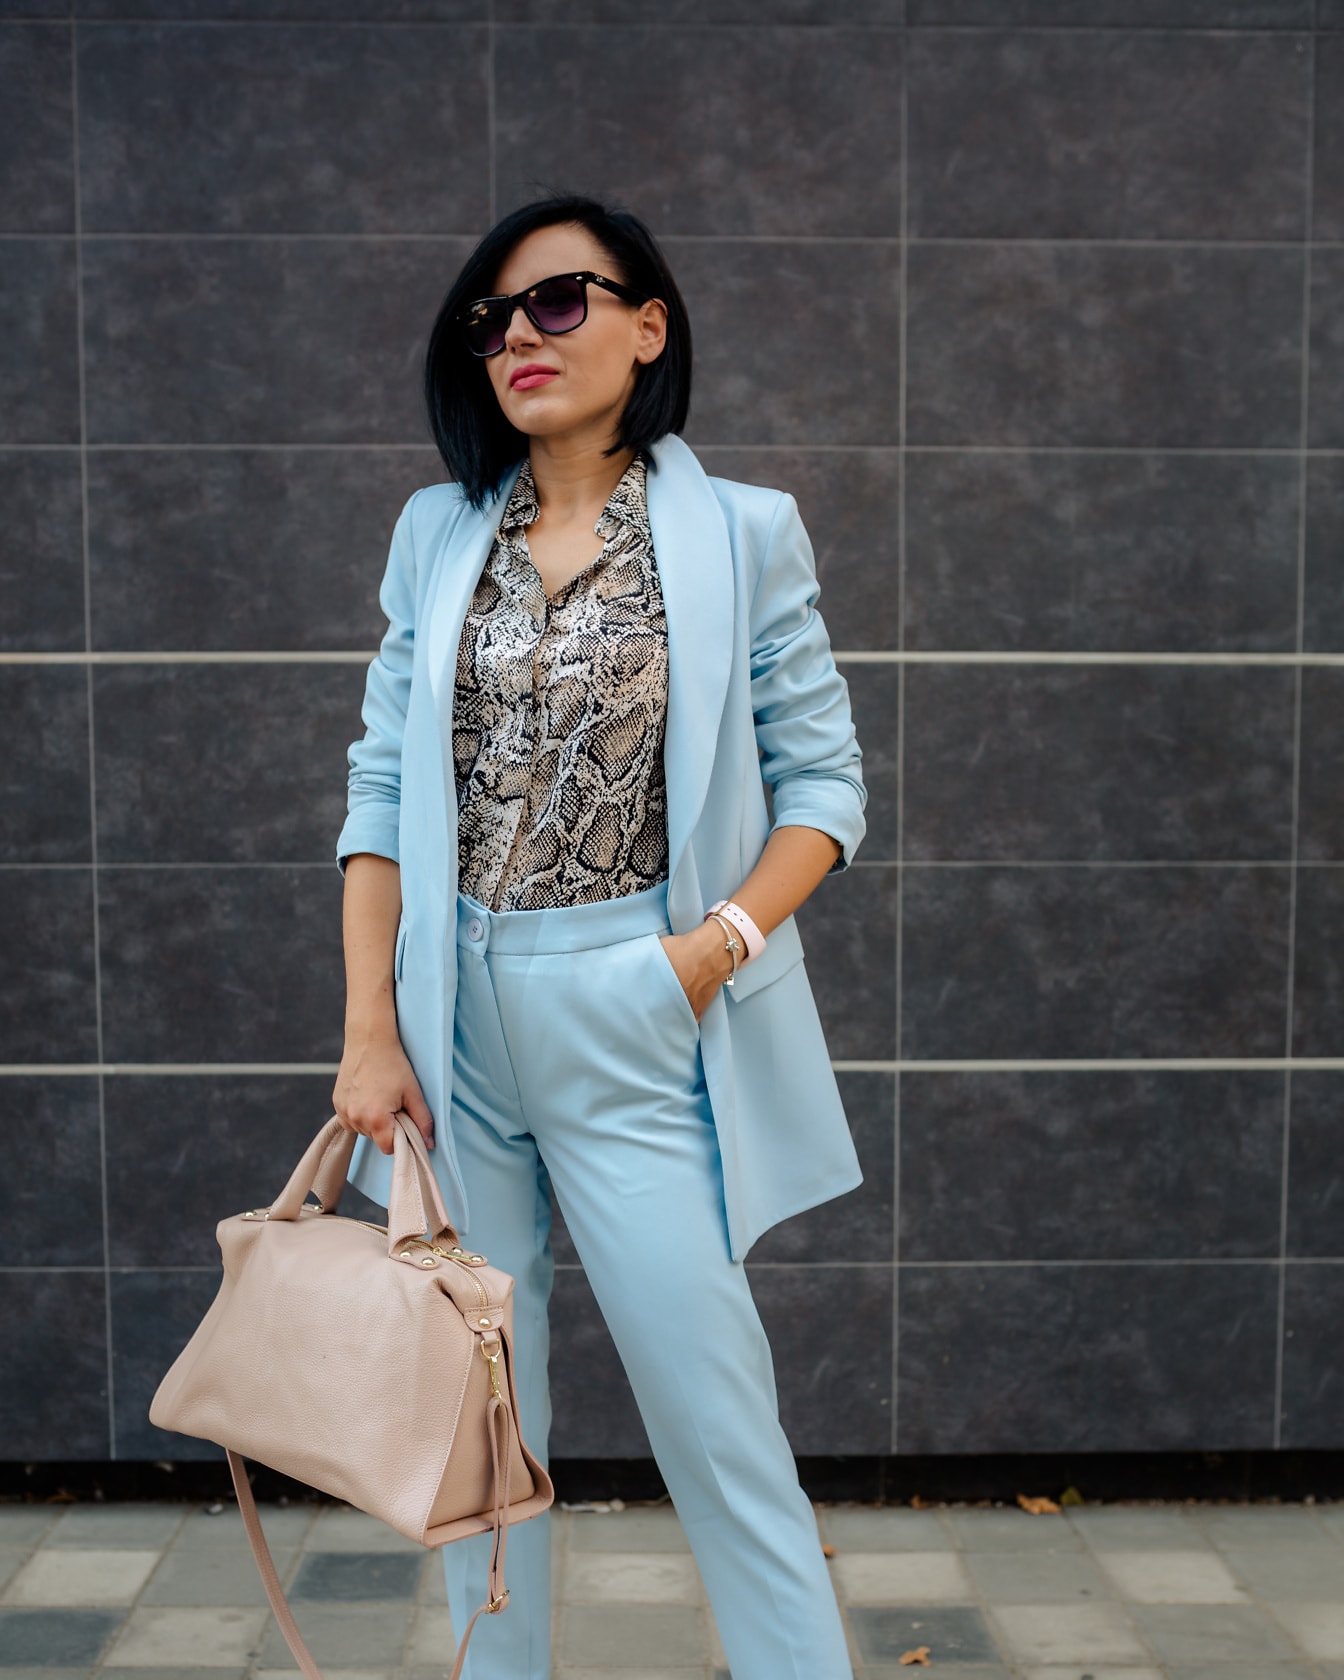 Oszałamiająco piękna kobieta biznesu pozuje w niebieskim płaszczu i spodniach, trzymając beżową skórzaną torebkę